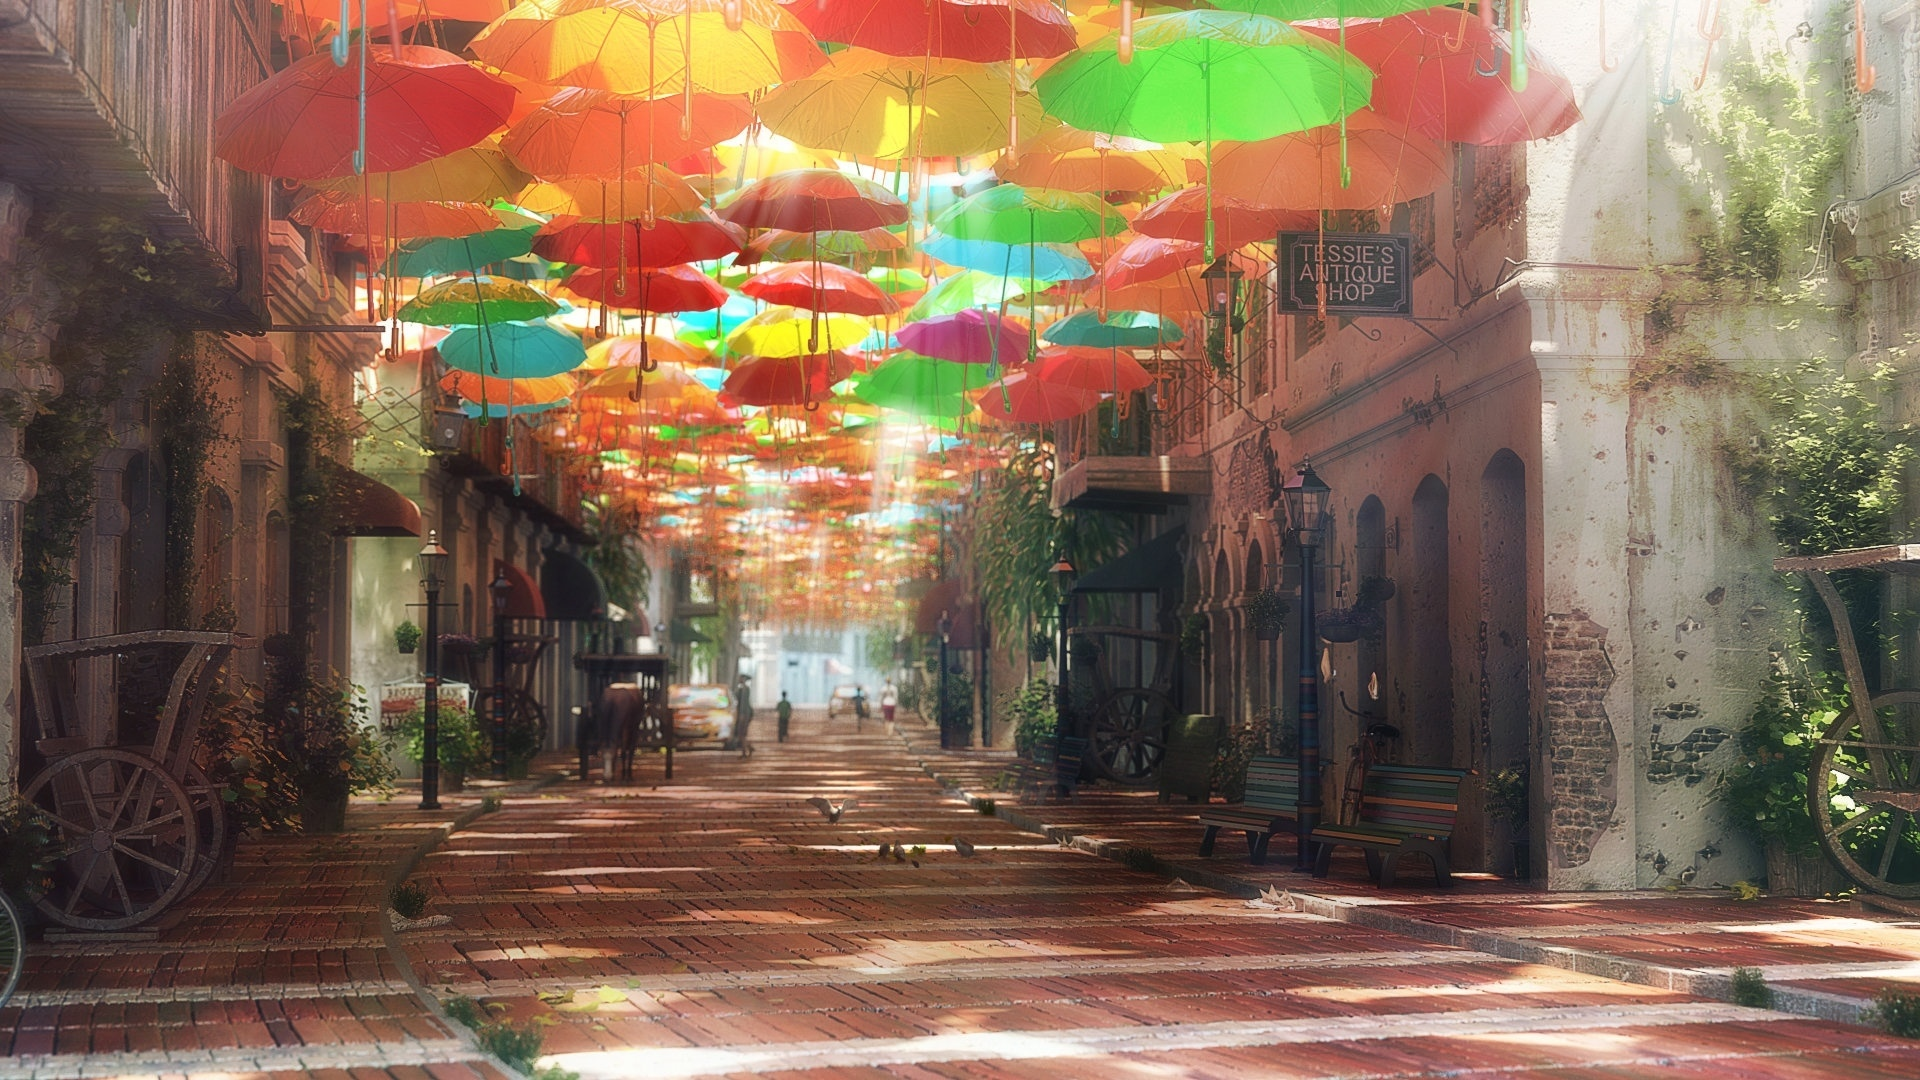 улица, зонтики